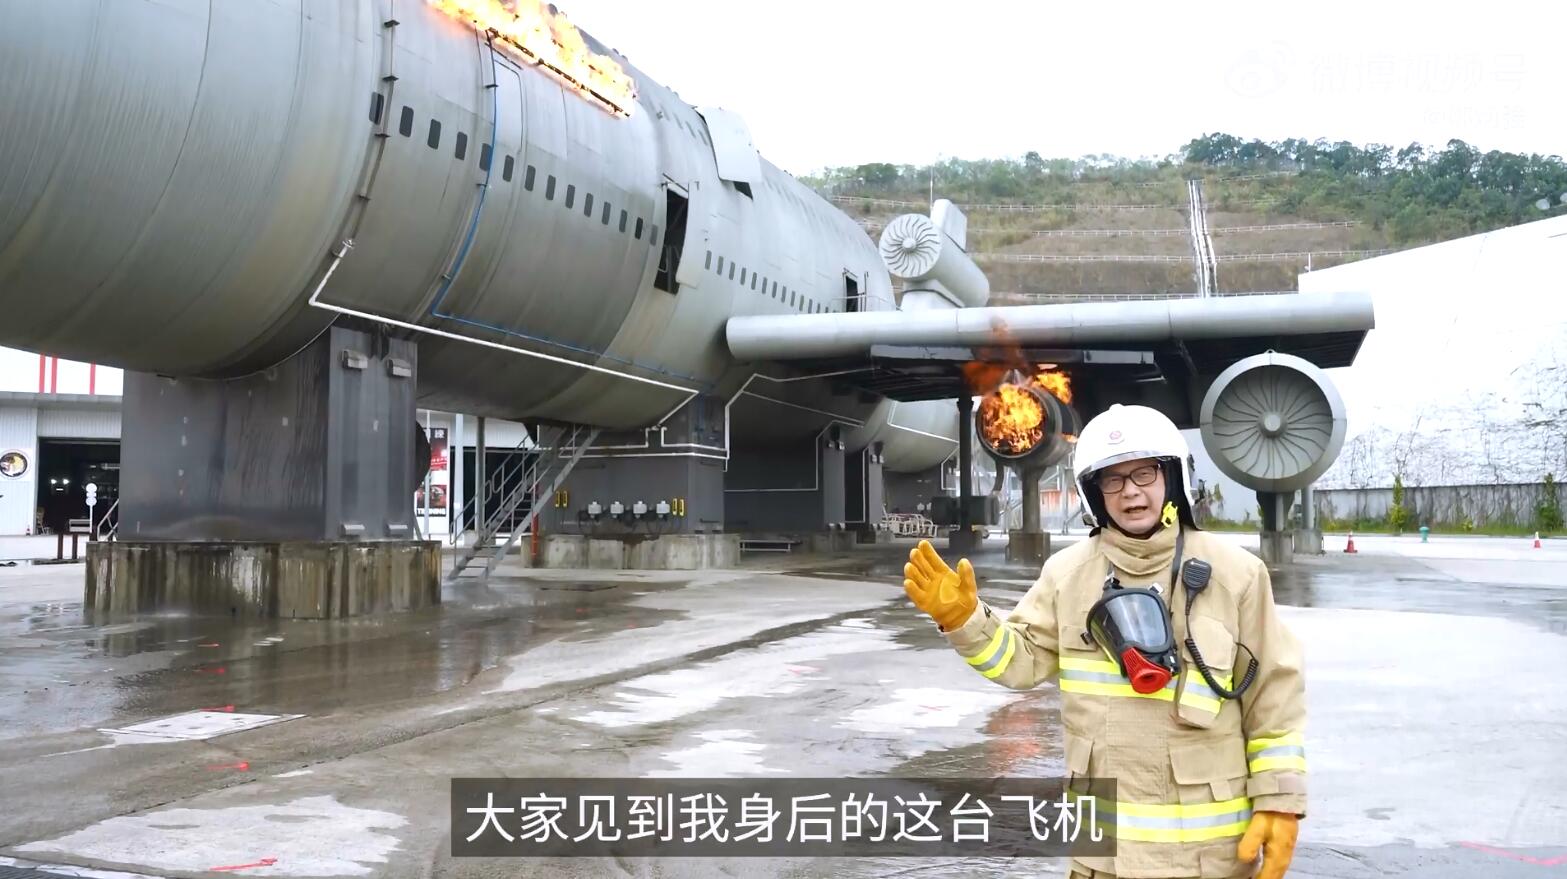 有片 | 鄧炳強再次身着「黃金戰衣」 解畫大型事故救援訓練